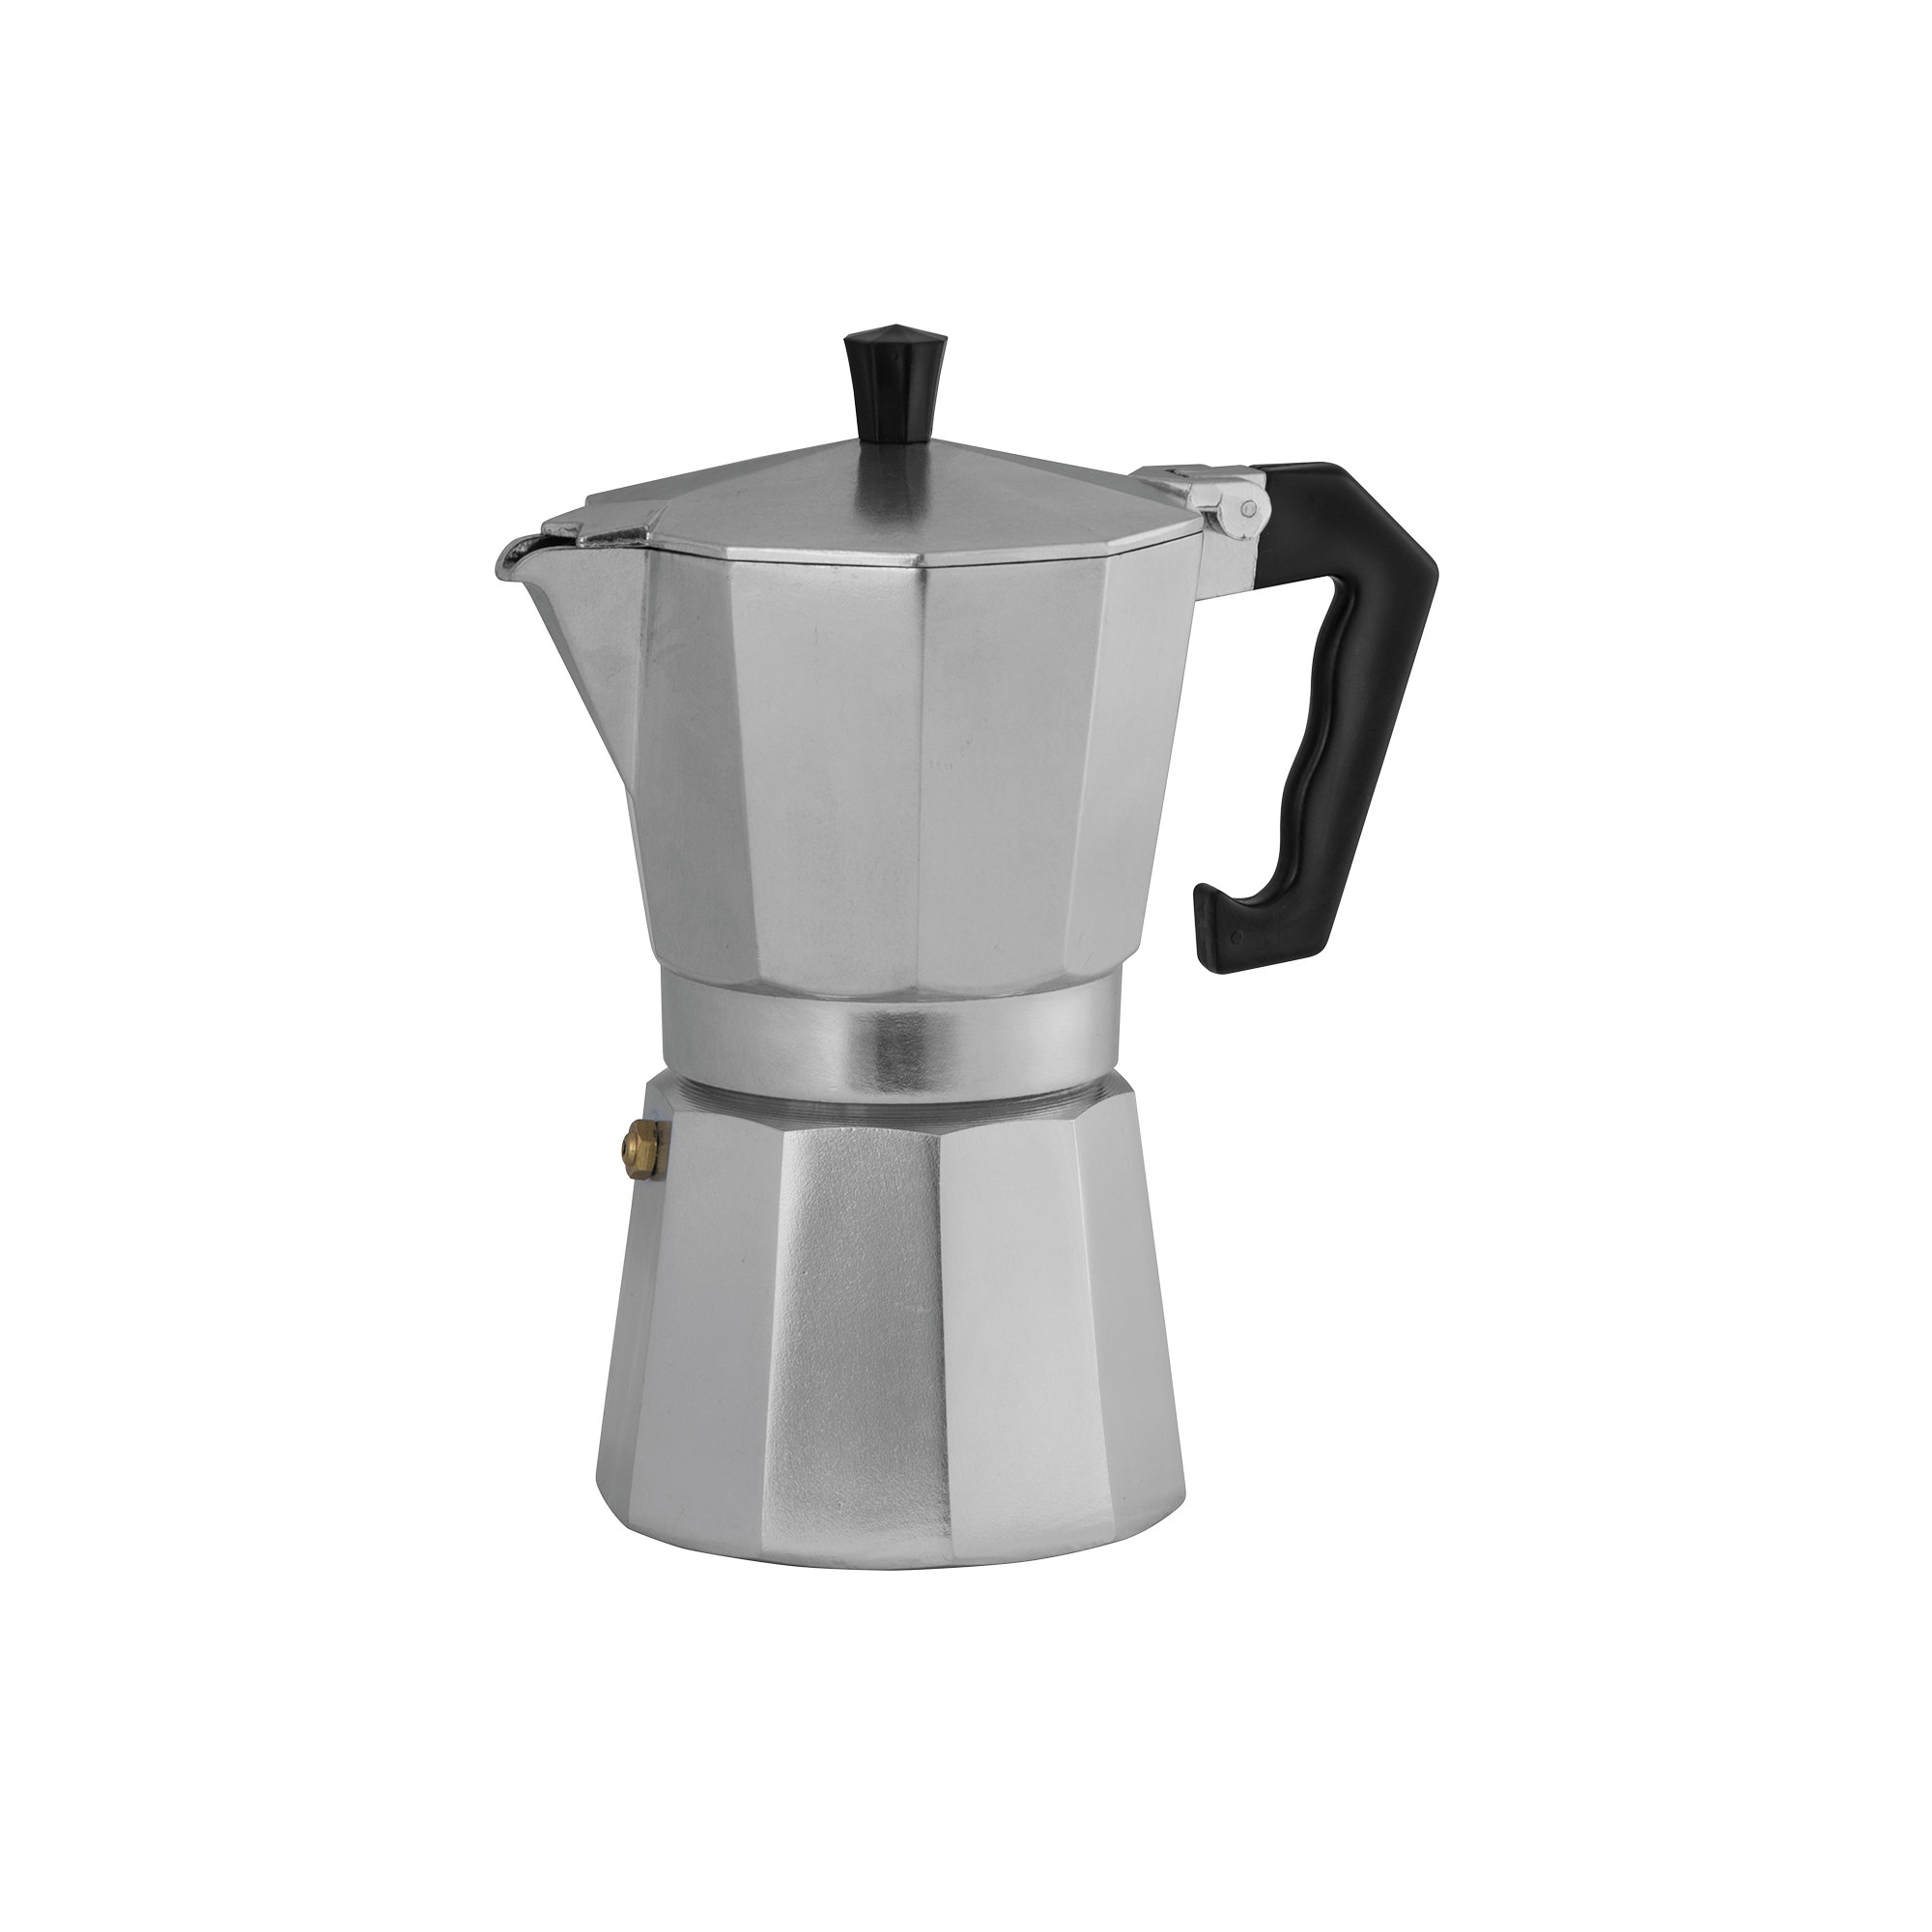 Avanti ClassicPro Espresso Coffee Maker 3 Cup Image 1